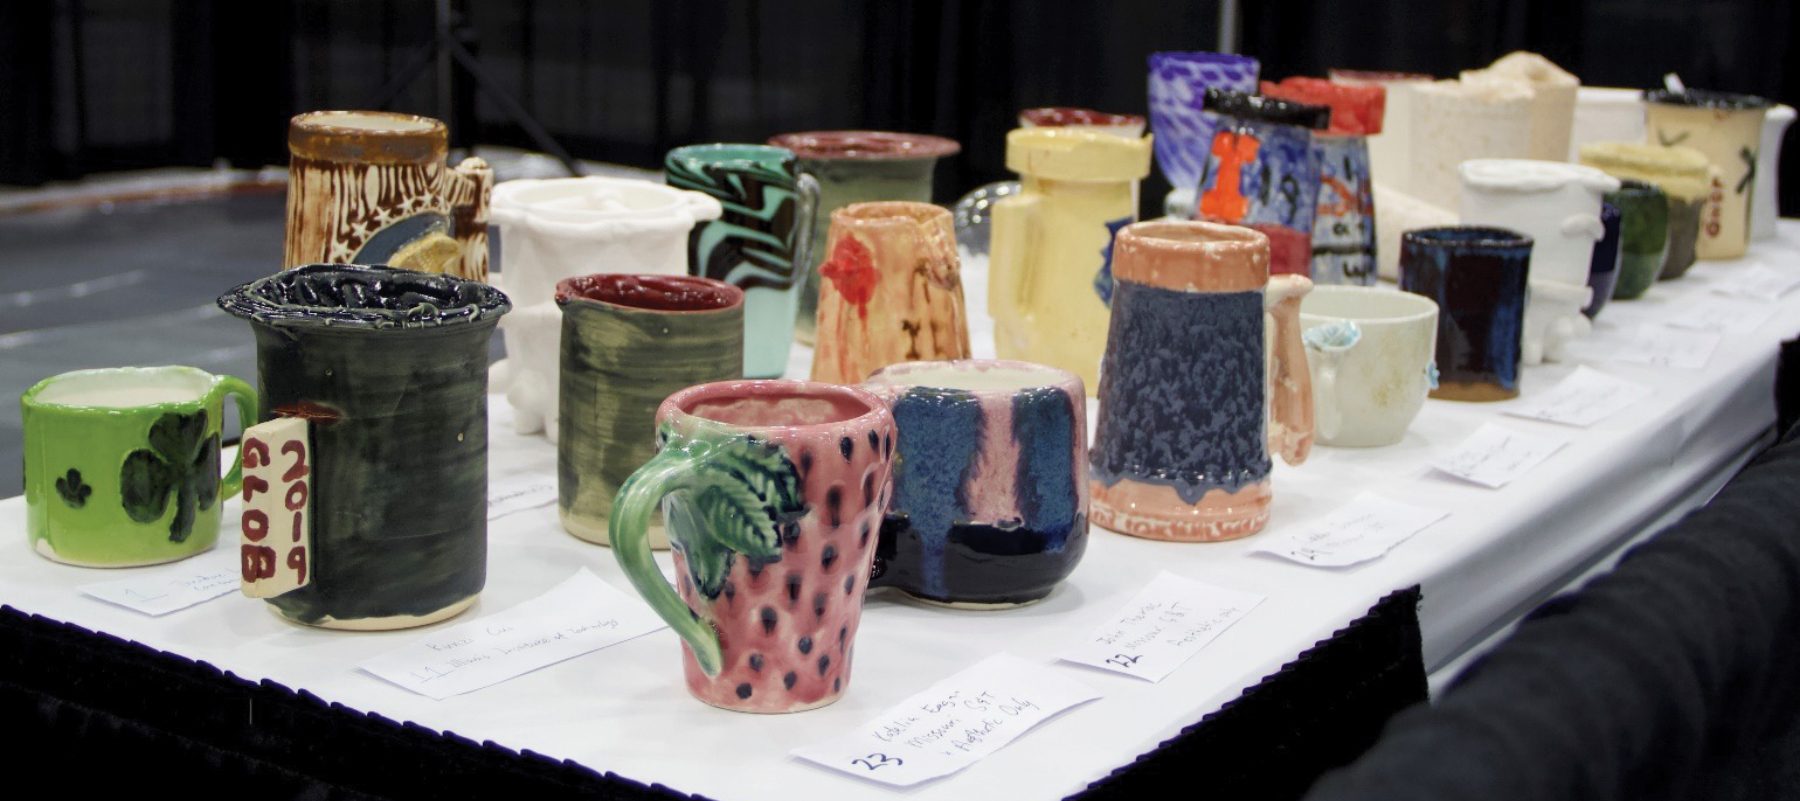 Entries for the Ceramic Mug Drop contest